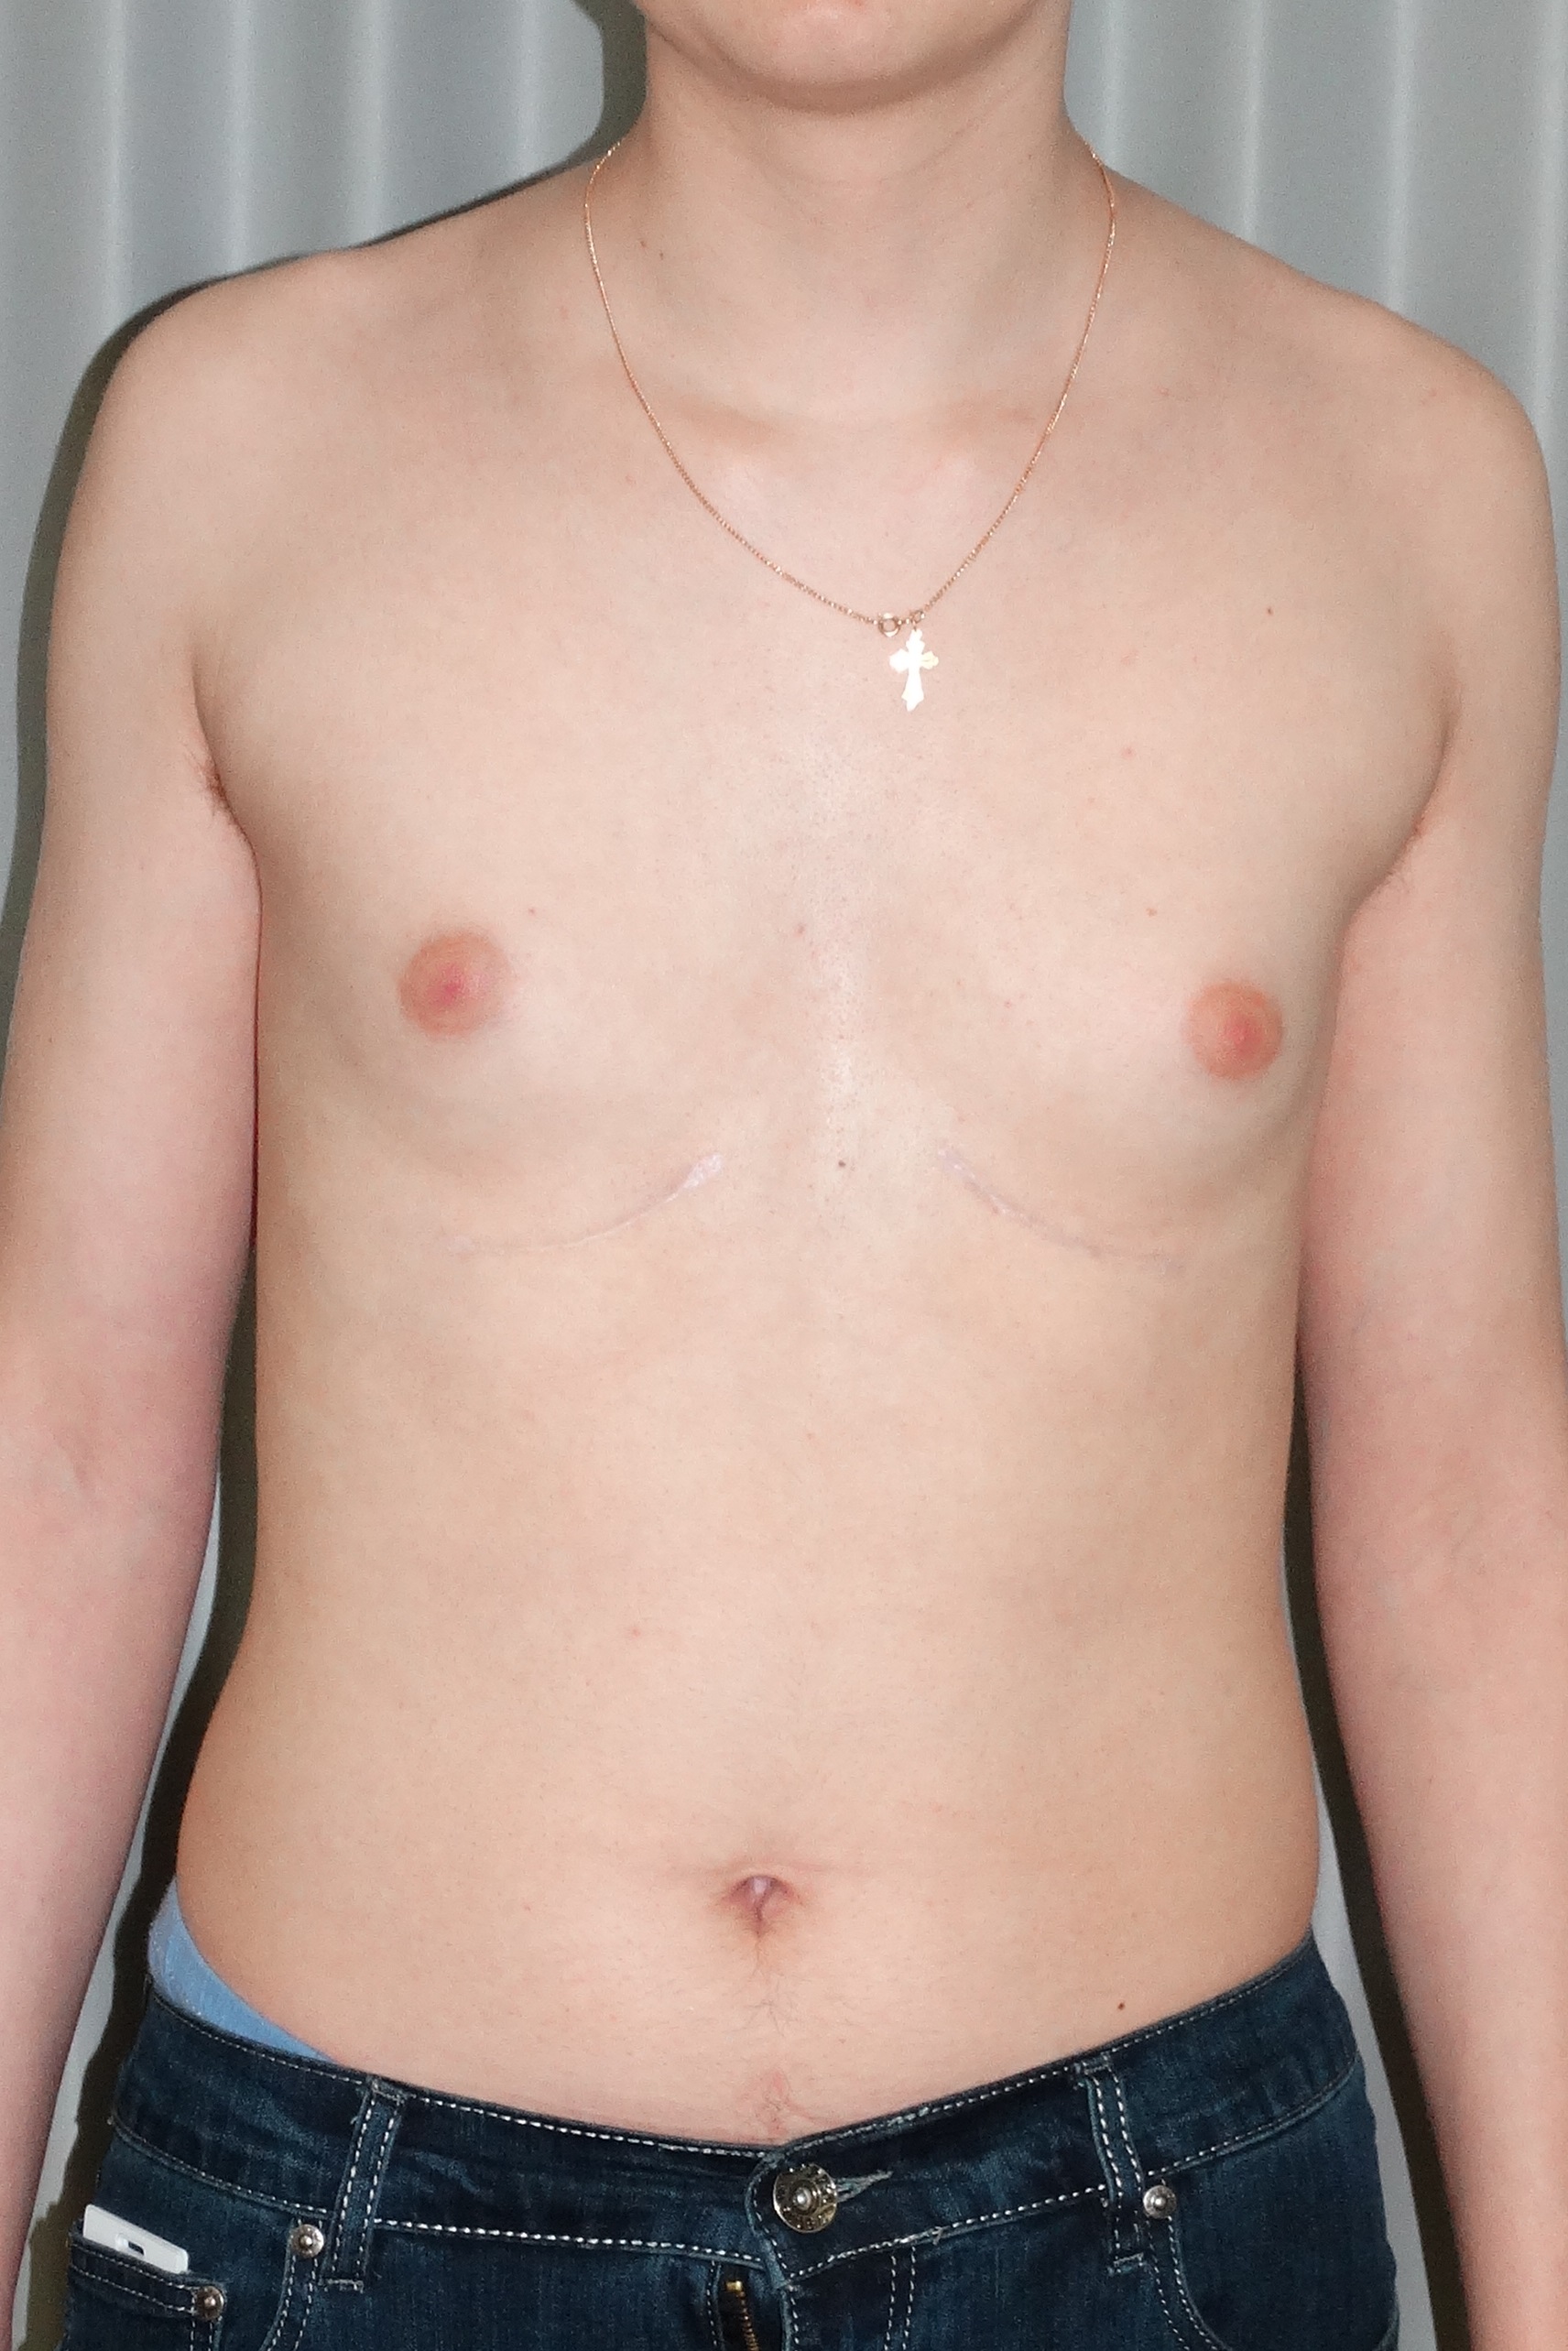 воронкообразная грудь у женщин фото 112